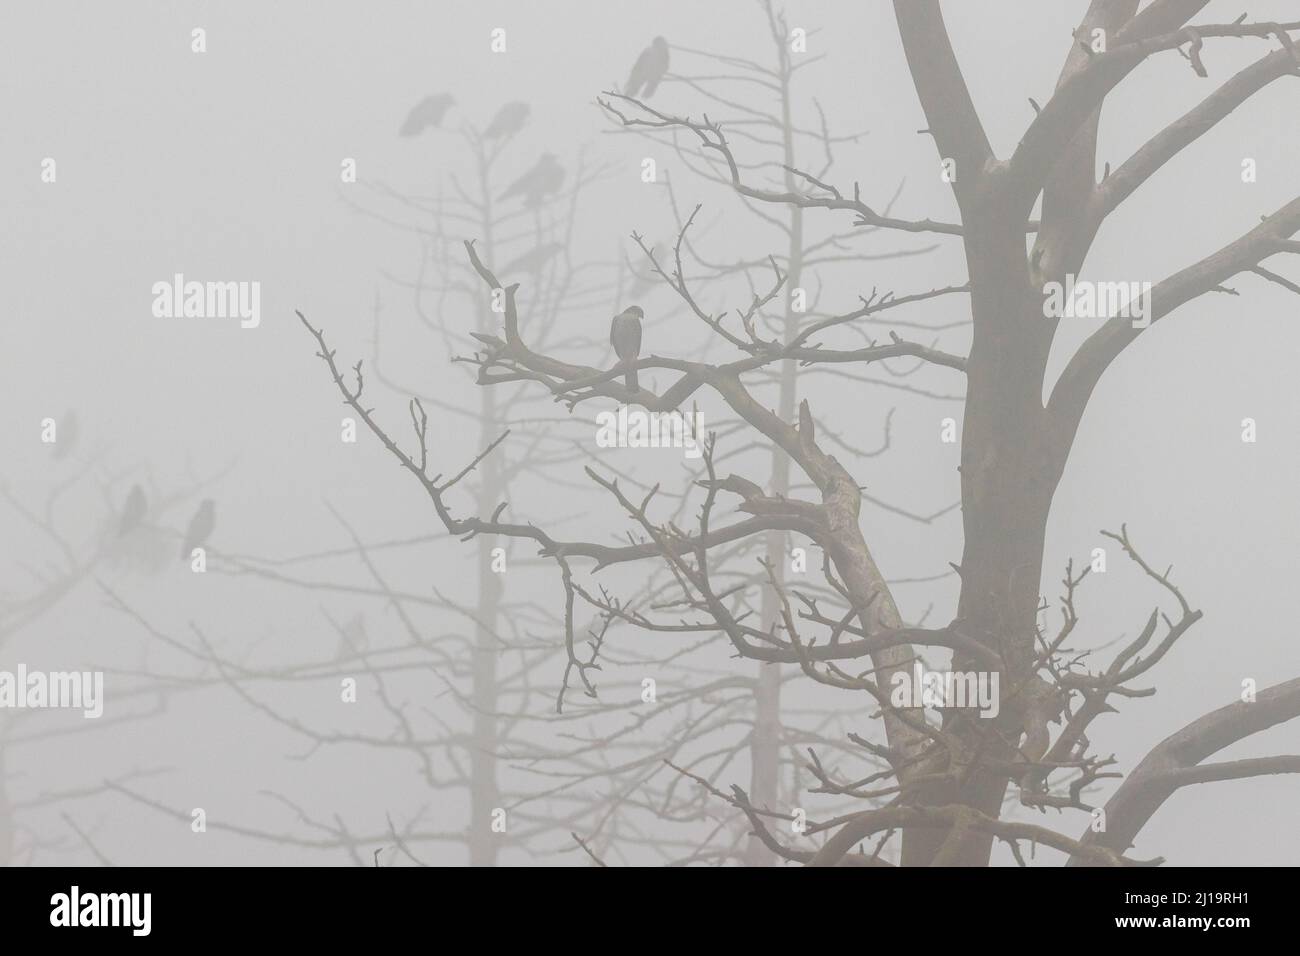 Krähe mit Kapuze (Corvus cornix), mehrere Vögel zusammen mit dem eurasischen Sperber (Accipiter nisus) in einem toten Baum mit Nebel, JuodkrantÄ-, Kurische Nehrung Stockfoto